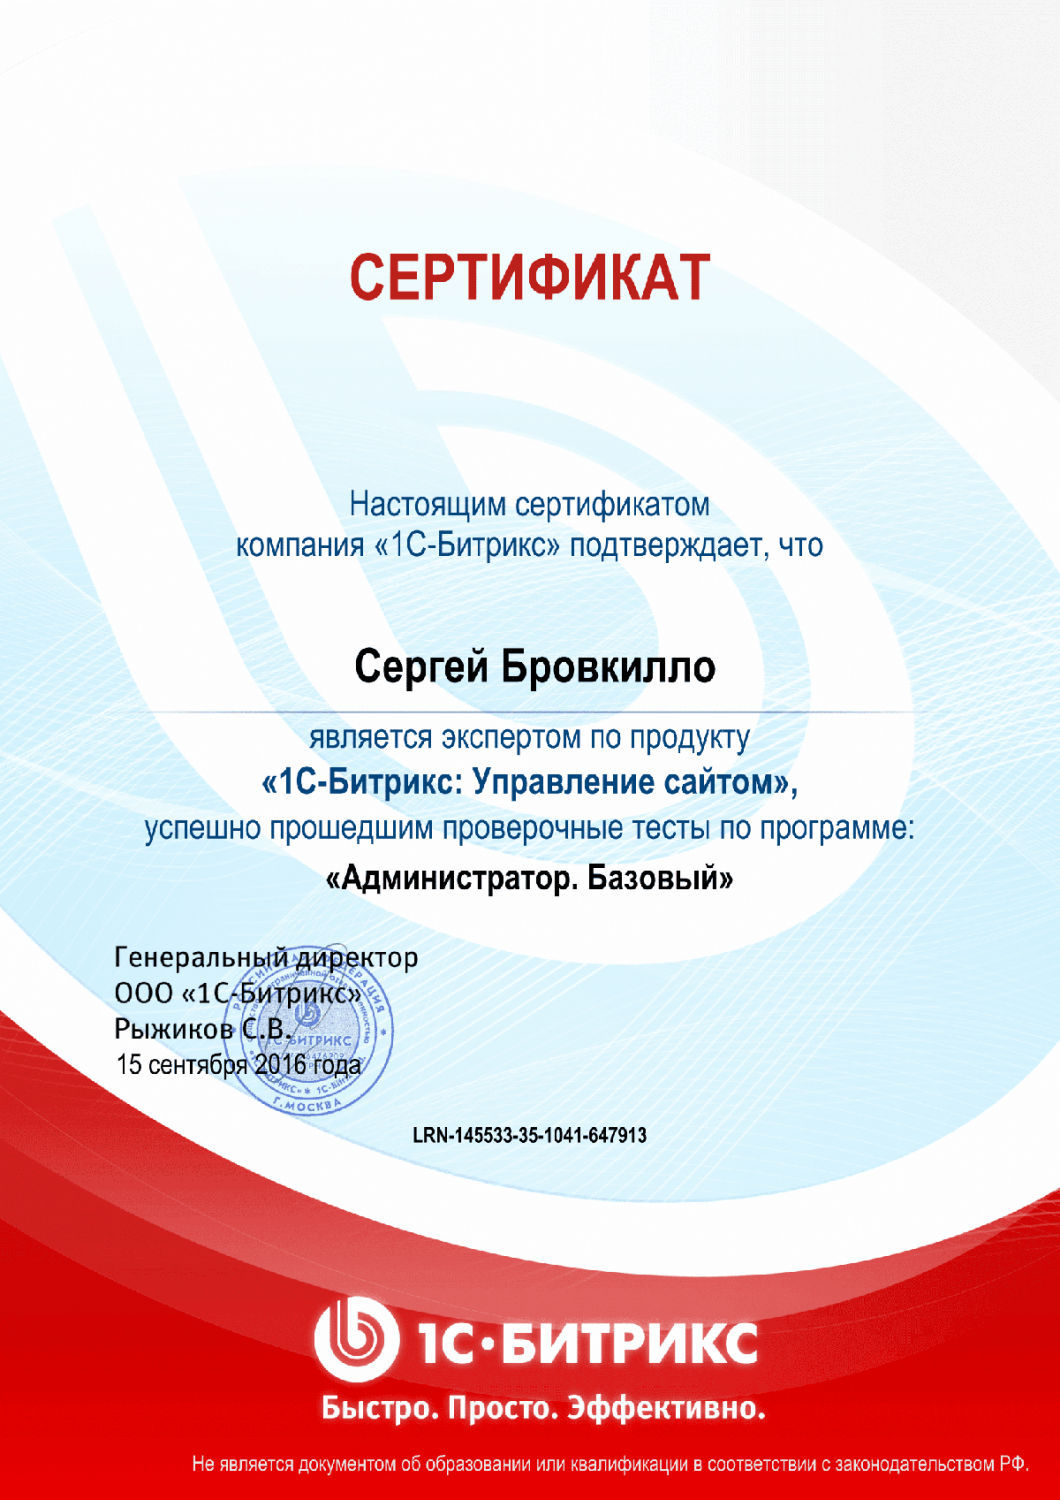 Сертификат эксперта по программе "Администратор. Базовый" в Тольятти